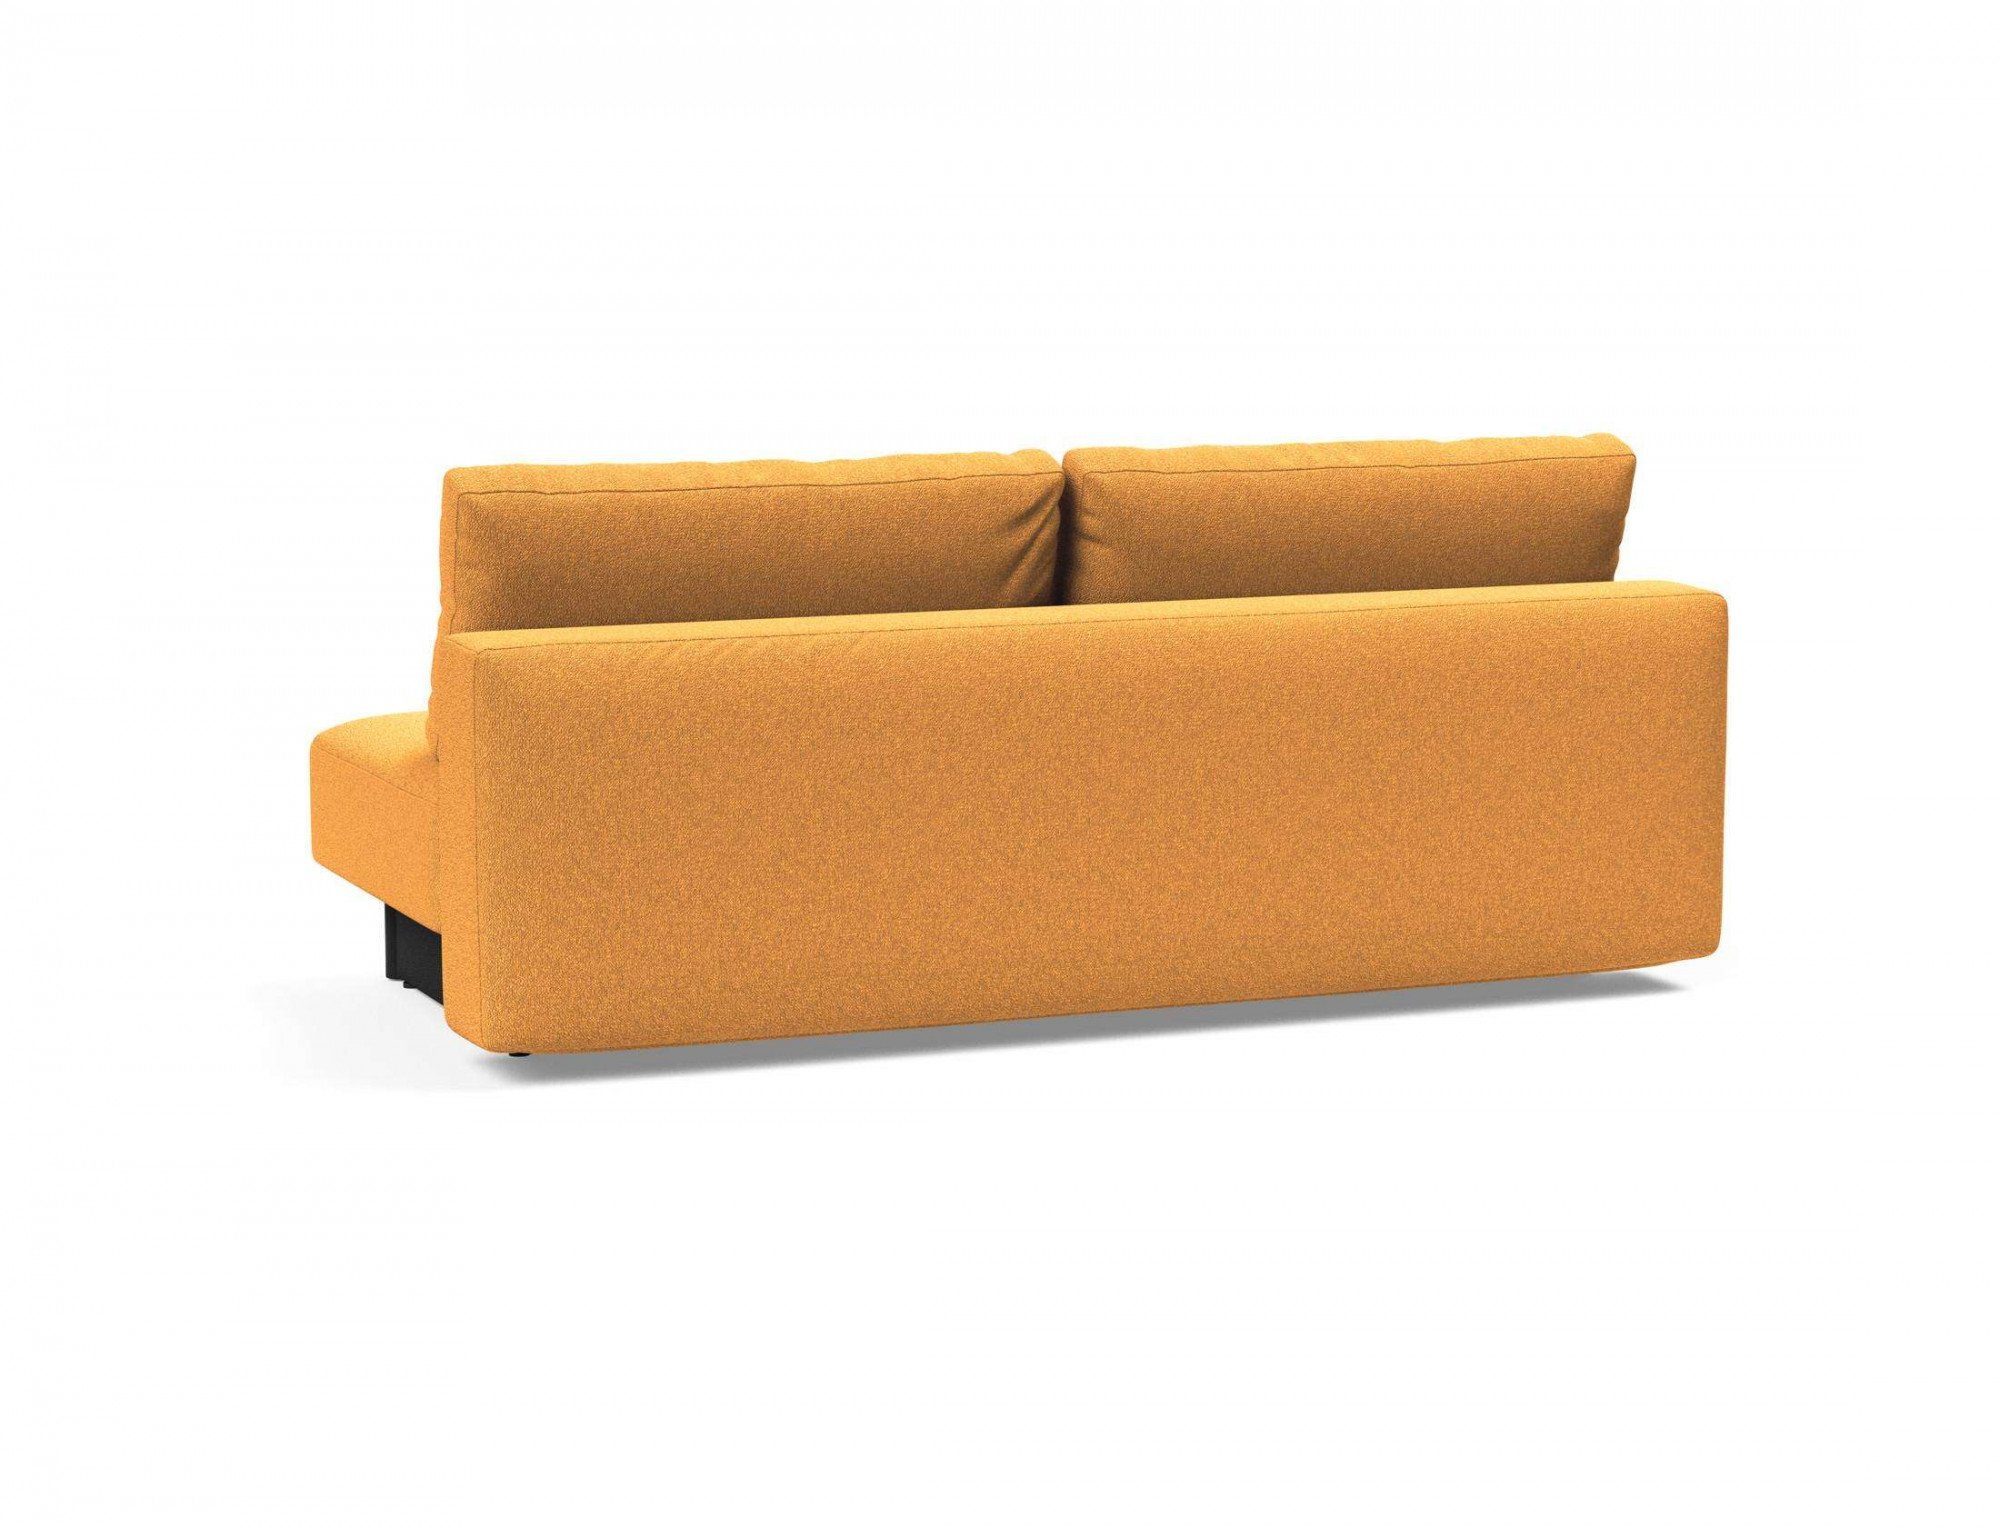 INNOVATION LIVING ™ 3-Sitzer Merga Stellfläche Design, wenig Bettkasten,minimalistischem Schlafsofa, bedarf großem